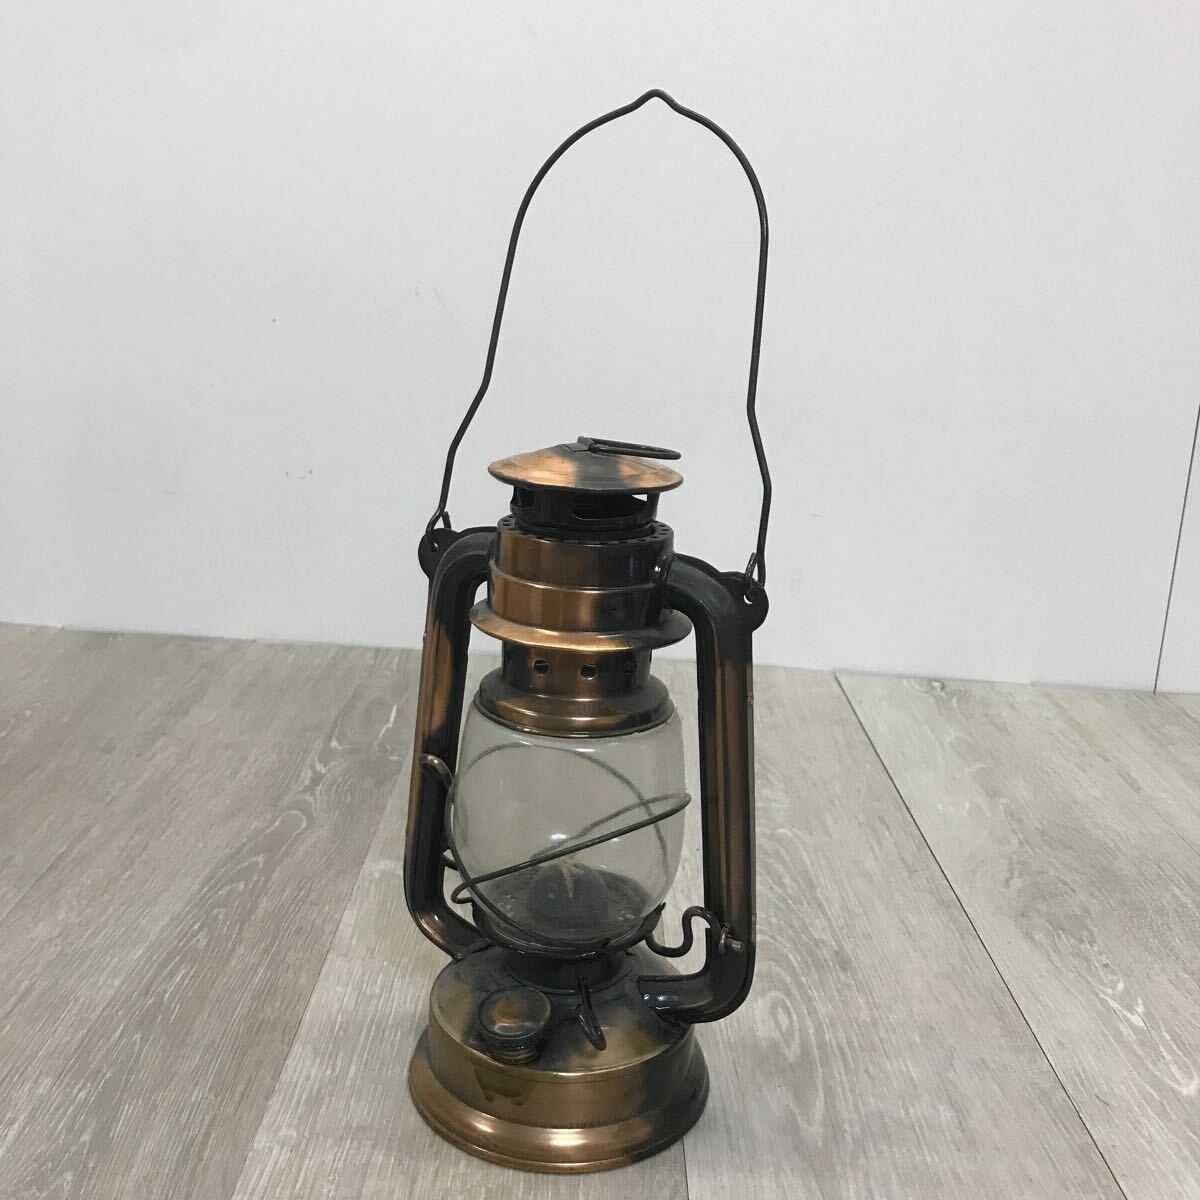 K6 オイルランタン オイルランプ ランタン 照明 灯油ランプ レトロ インテリア アウトドア キャンプ 写真小道具 ハロウィンの画像1